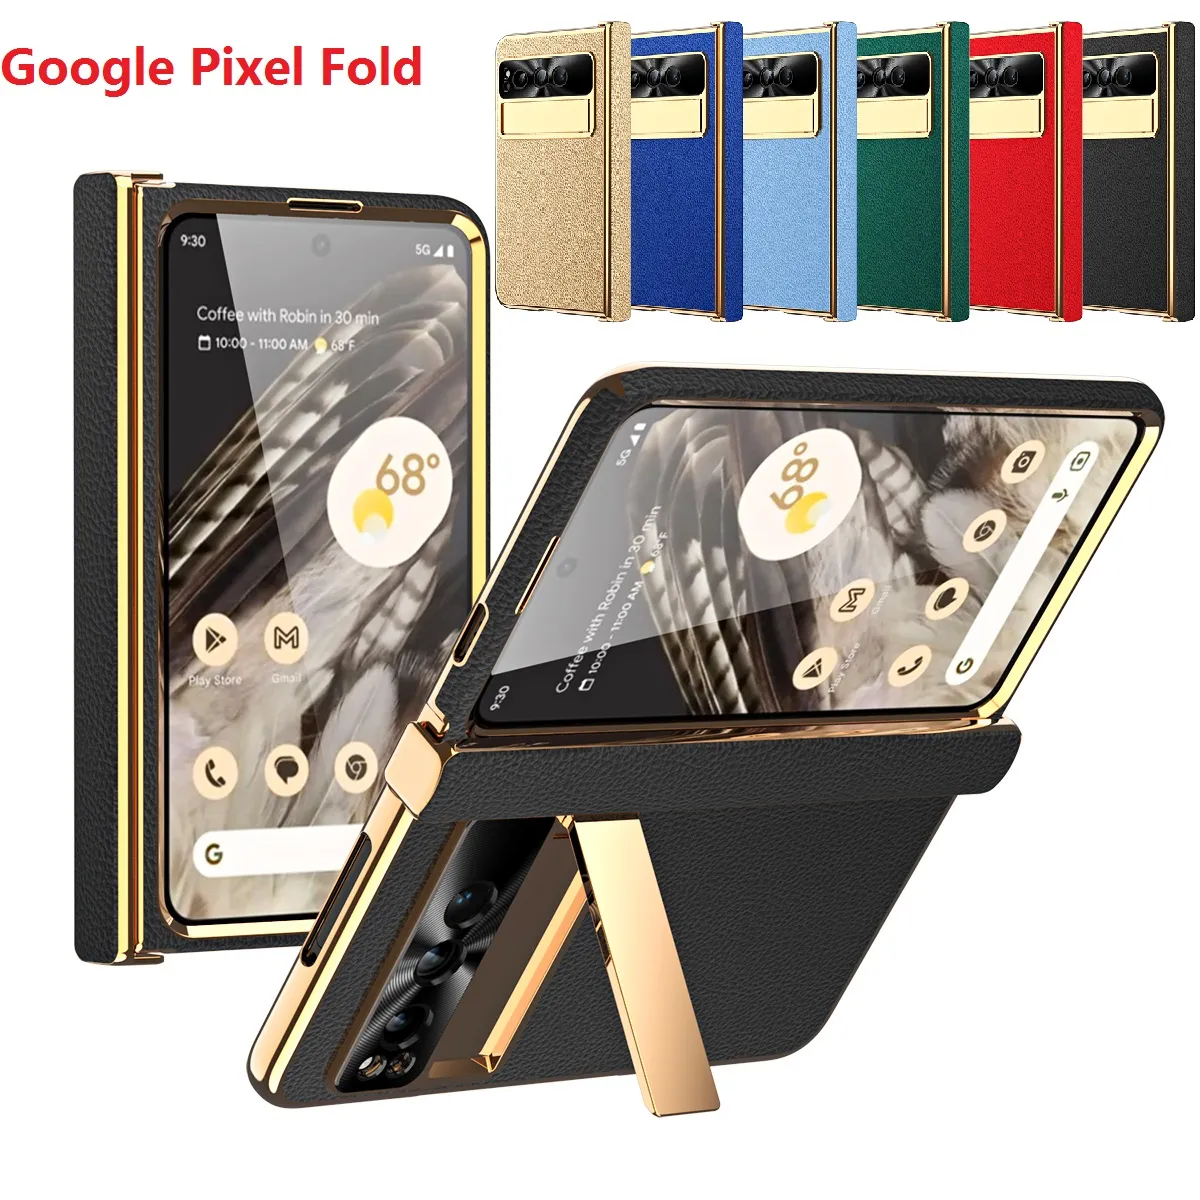 Schutzhüllen aus PU-Leder für Google Pixel Fold, Halterung, Scharnier, Schutzfolie, Displayschutzfolie